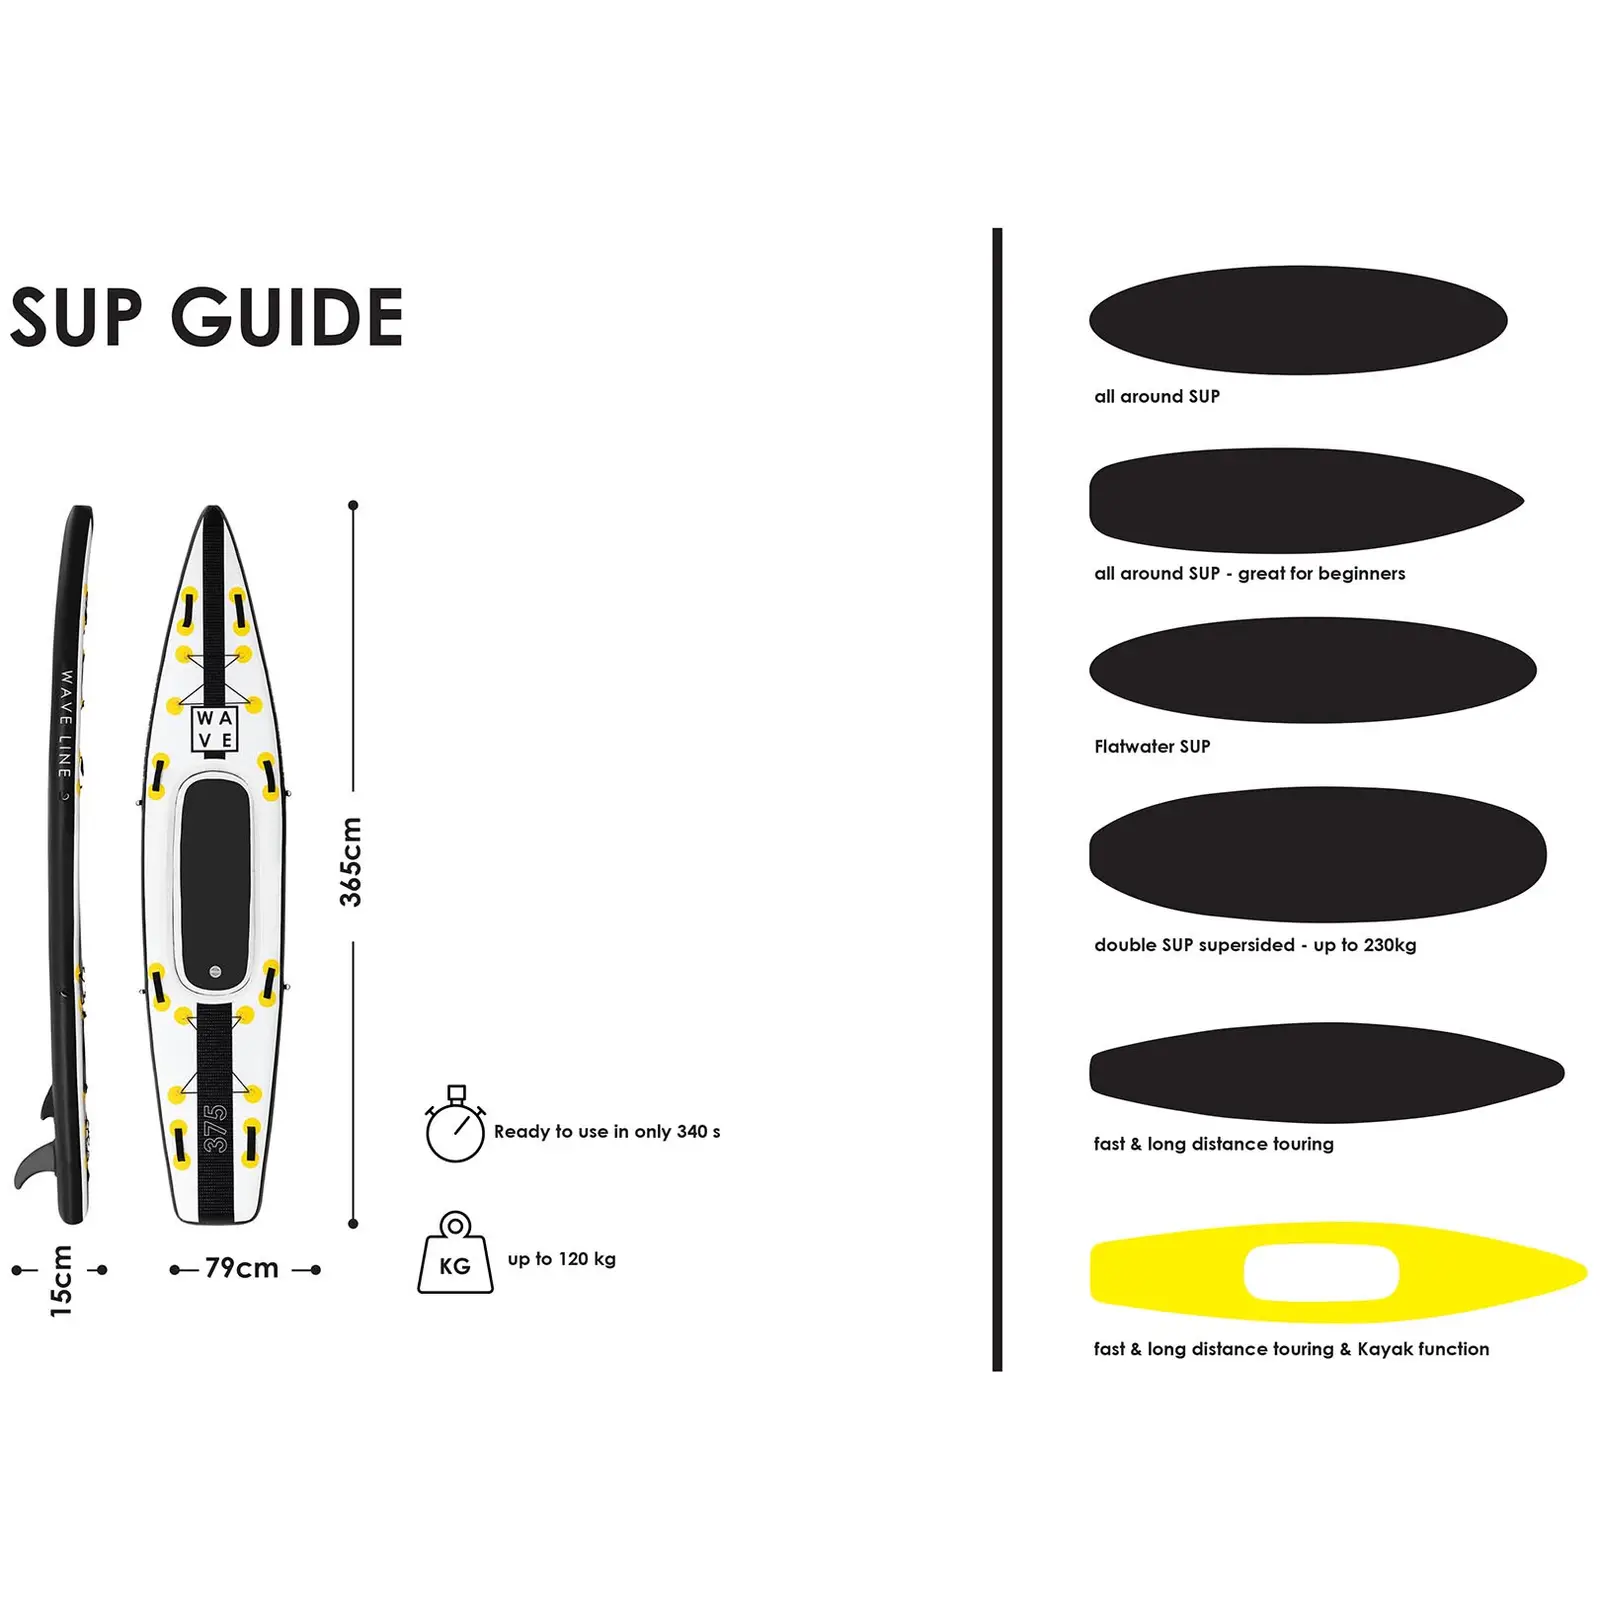 Stand up paddle gonflable - 120 kg - Noir/jaune - Kit incluant pagaie, siège et accessoires - 8